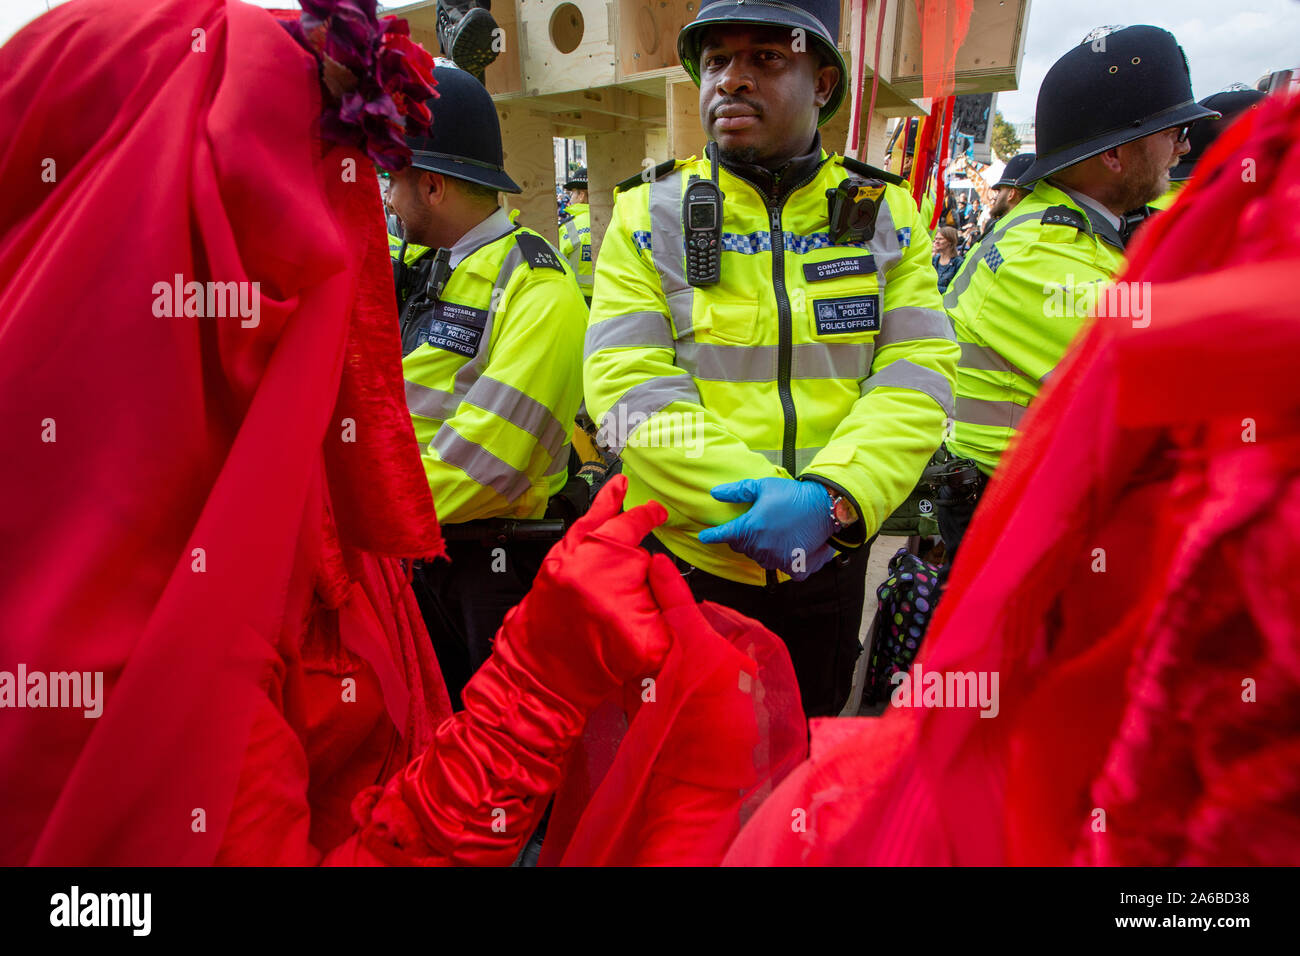 Londra, 10 ottobre 2019, estinzione della ribellione gruppo in costume rosso polizia circondano la preparazione di arresto acivists che hanno bloccato se stessi a una struttura in legno nella strada accanto a Trafalgar Square. Foto Stock